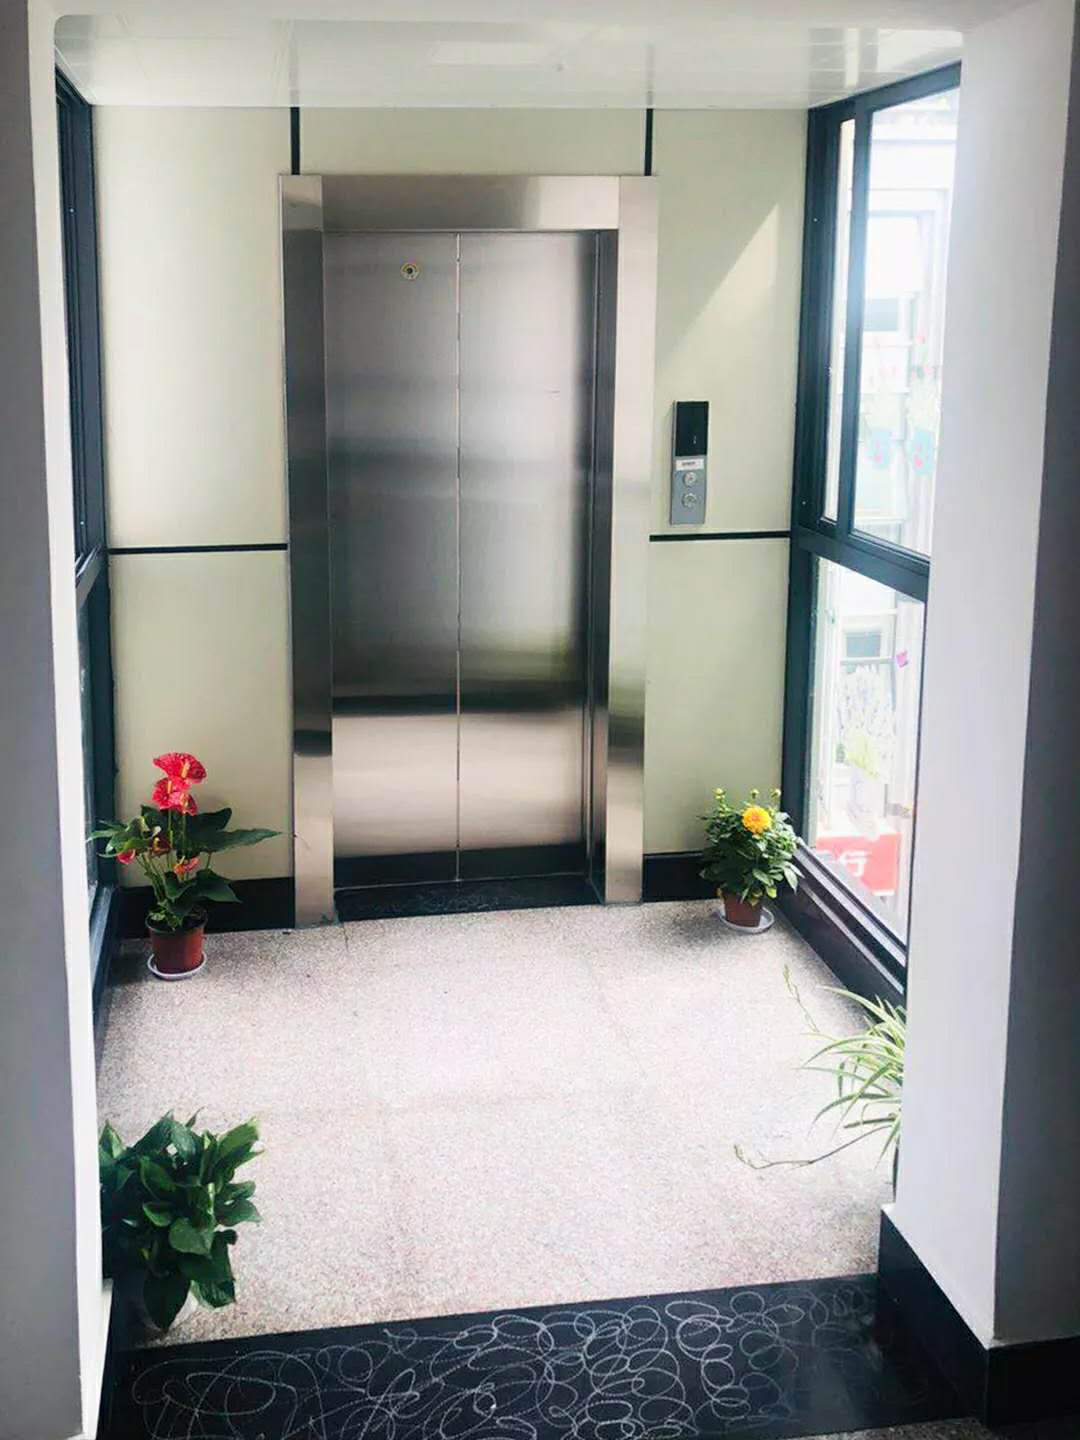 石家庄提供电梯改造安装价格_电梯改造相关-河北鸿腾电梯销售有限公司